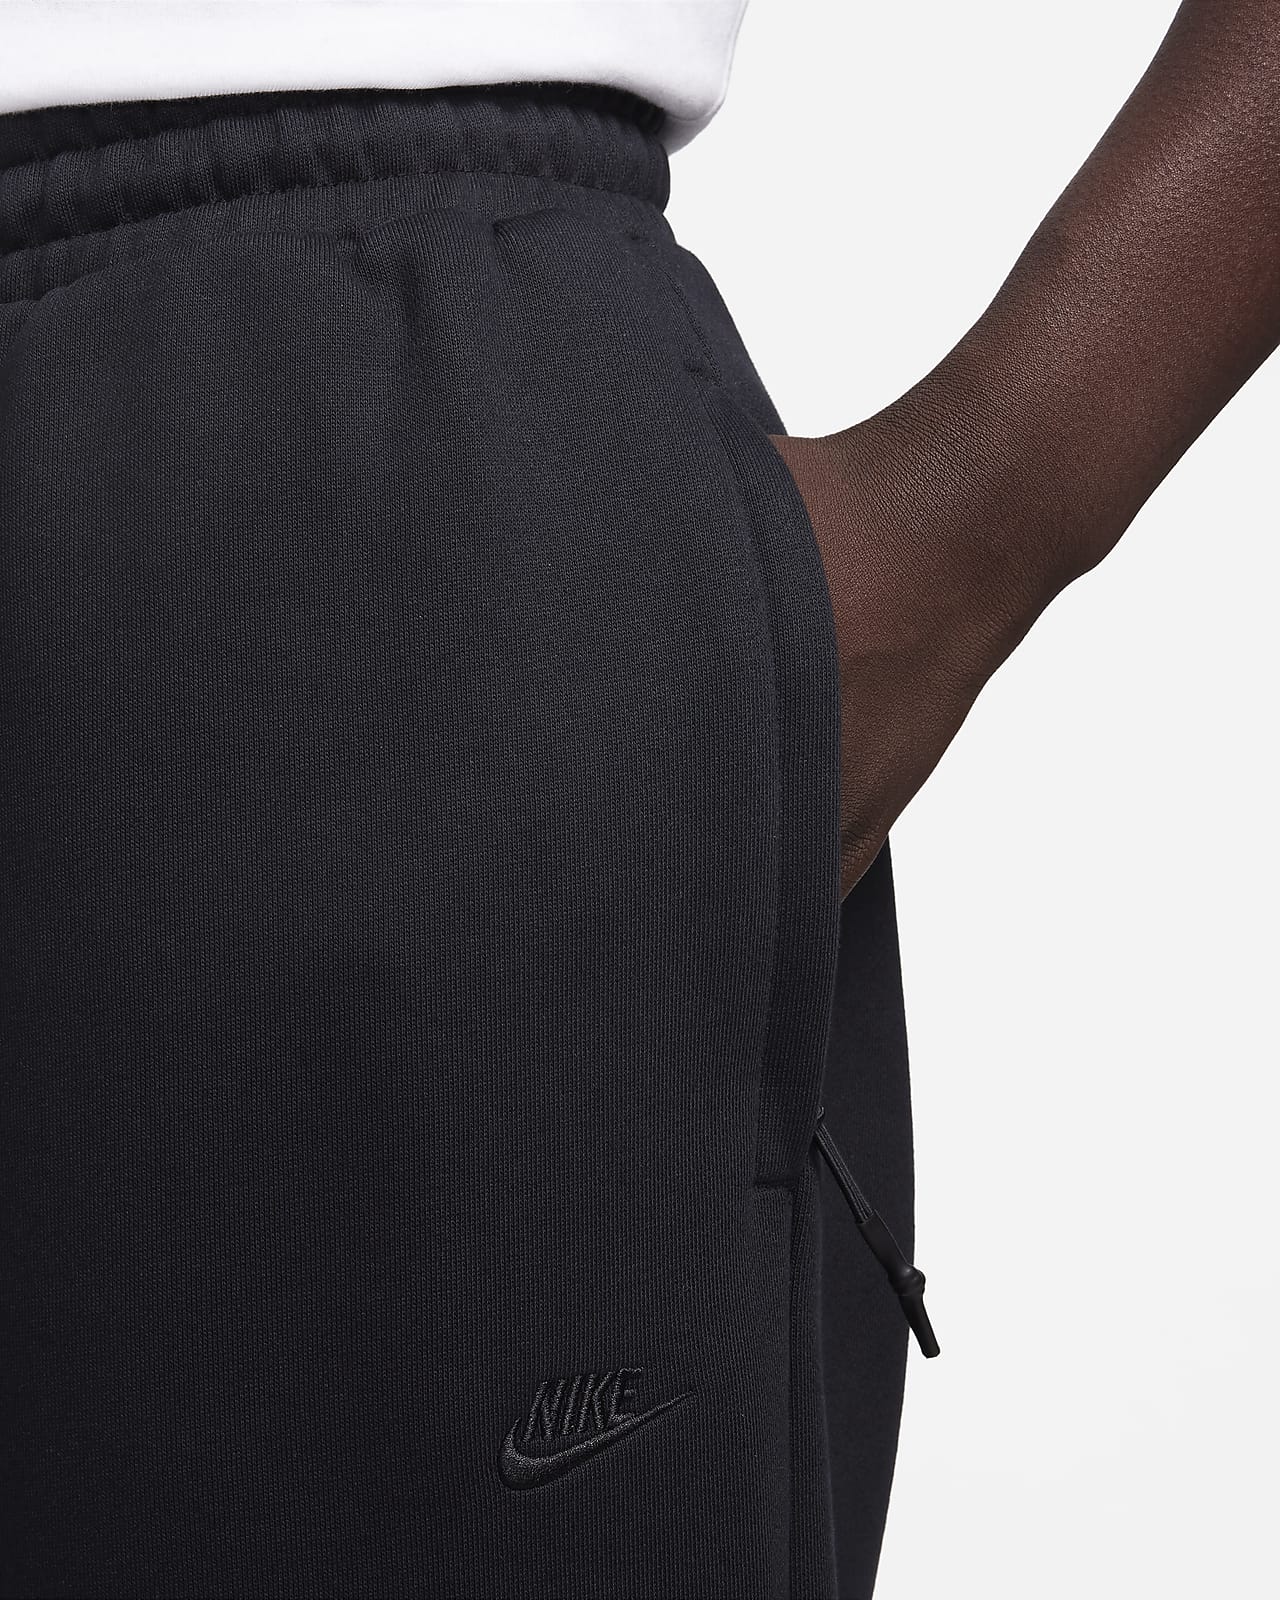 Nike Sportswear Therma-FIT Tech Pack Men's Winterized Pants